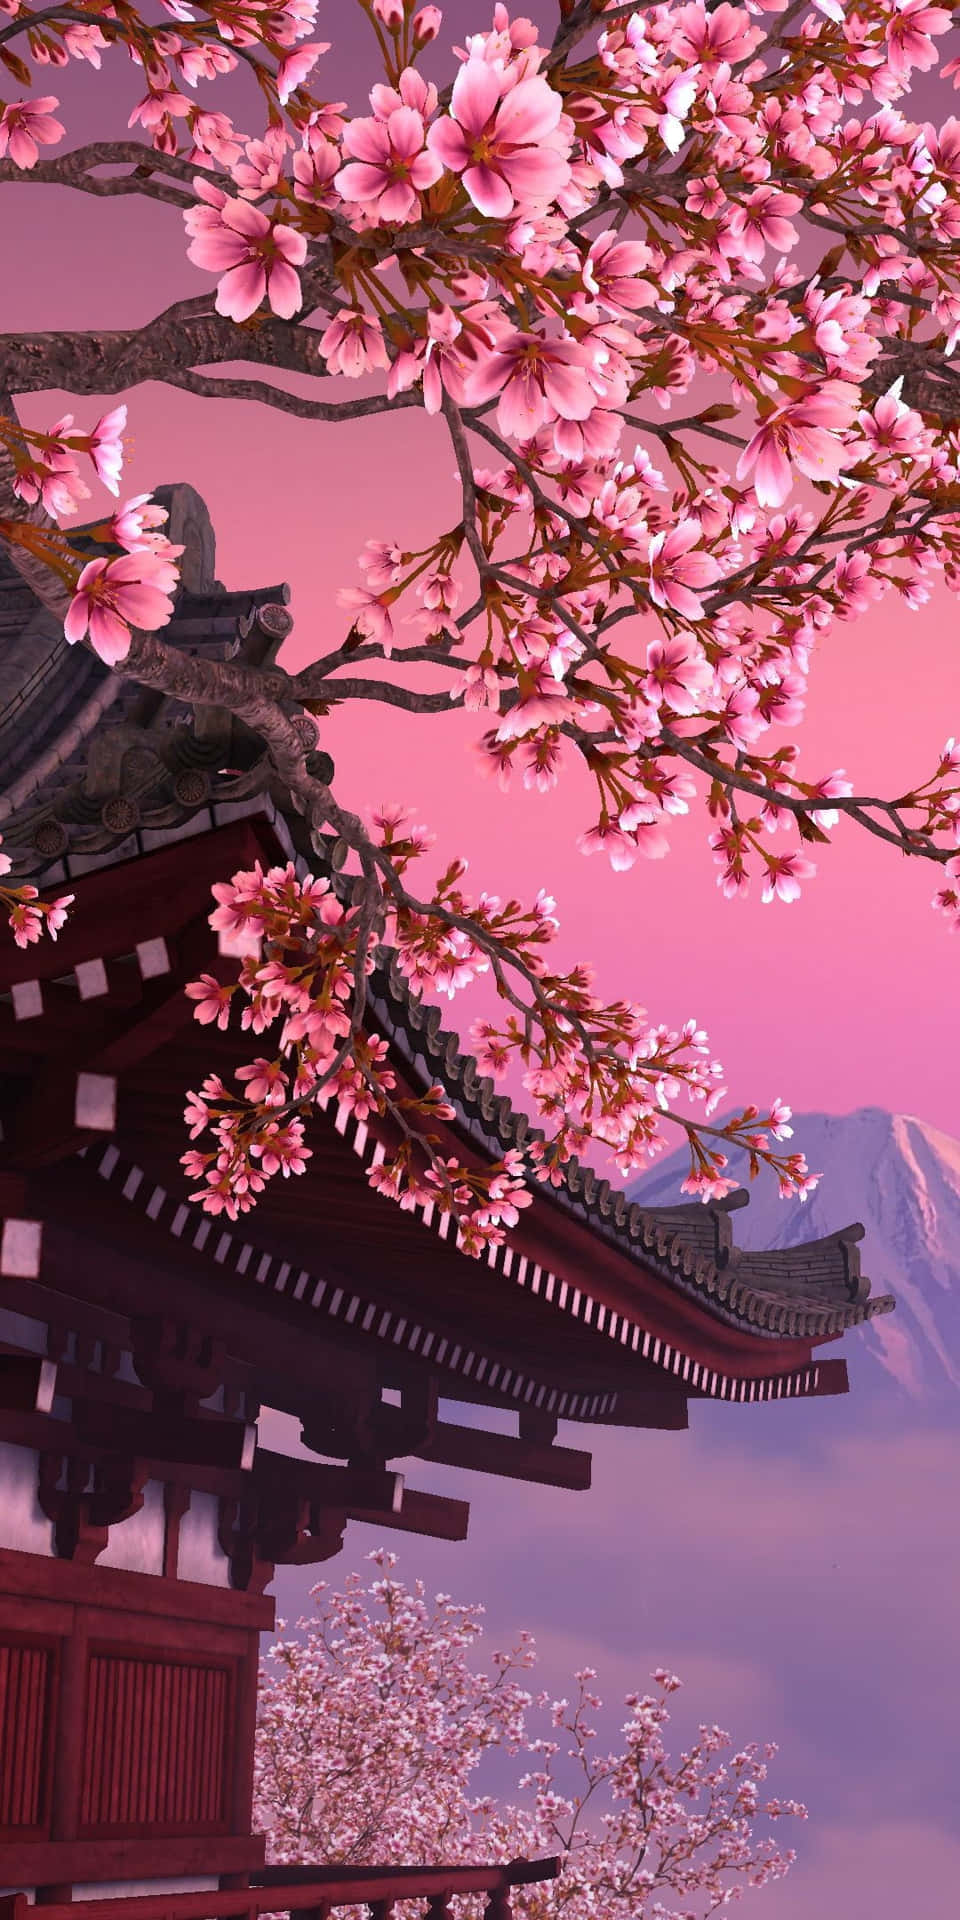 Fondode Pantalla De Un Templo Japonés De Anime Con Cerezos En Flor.